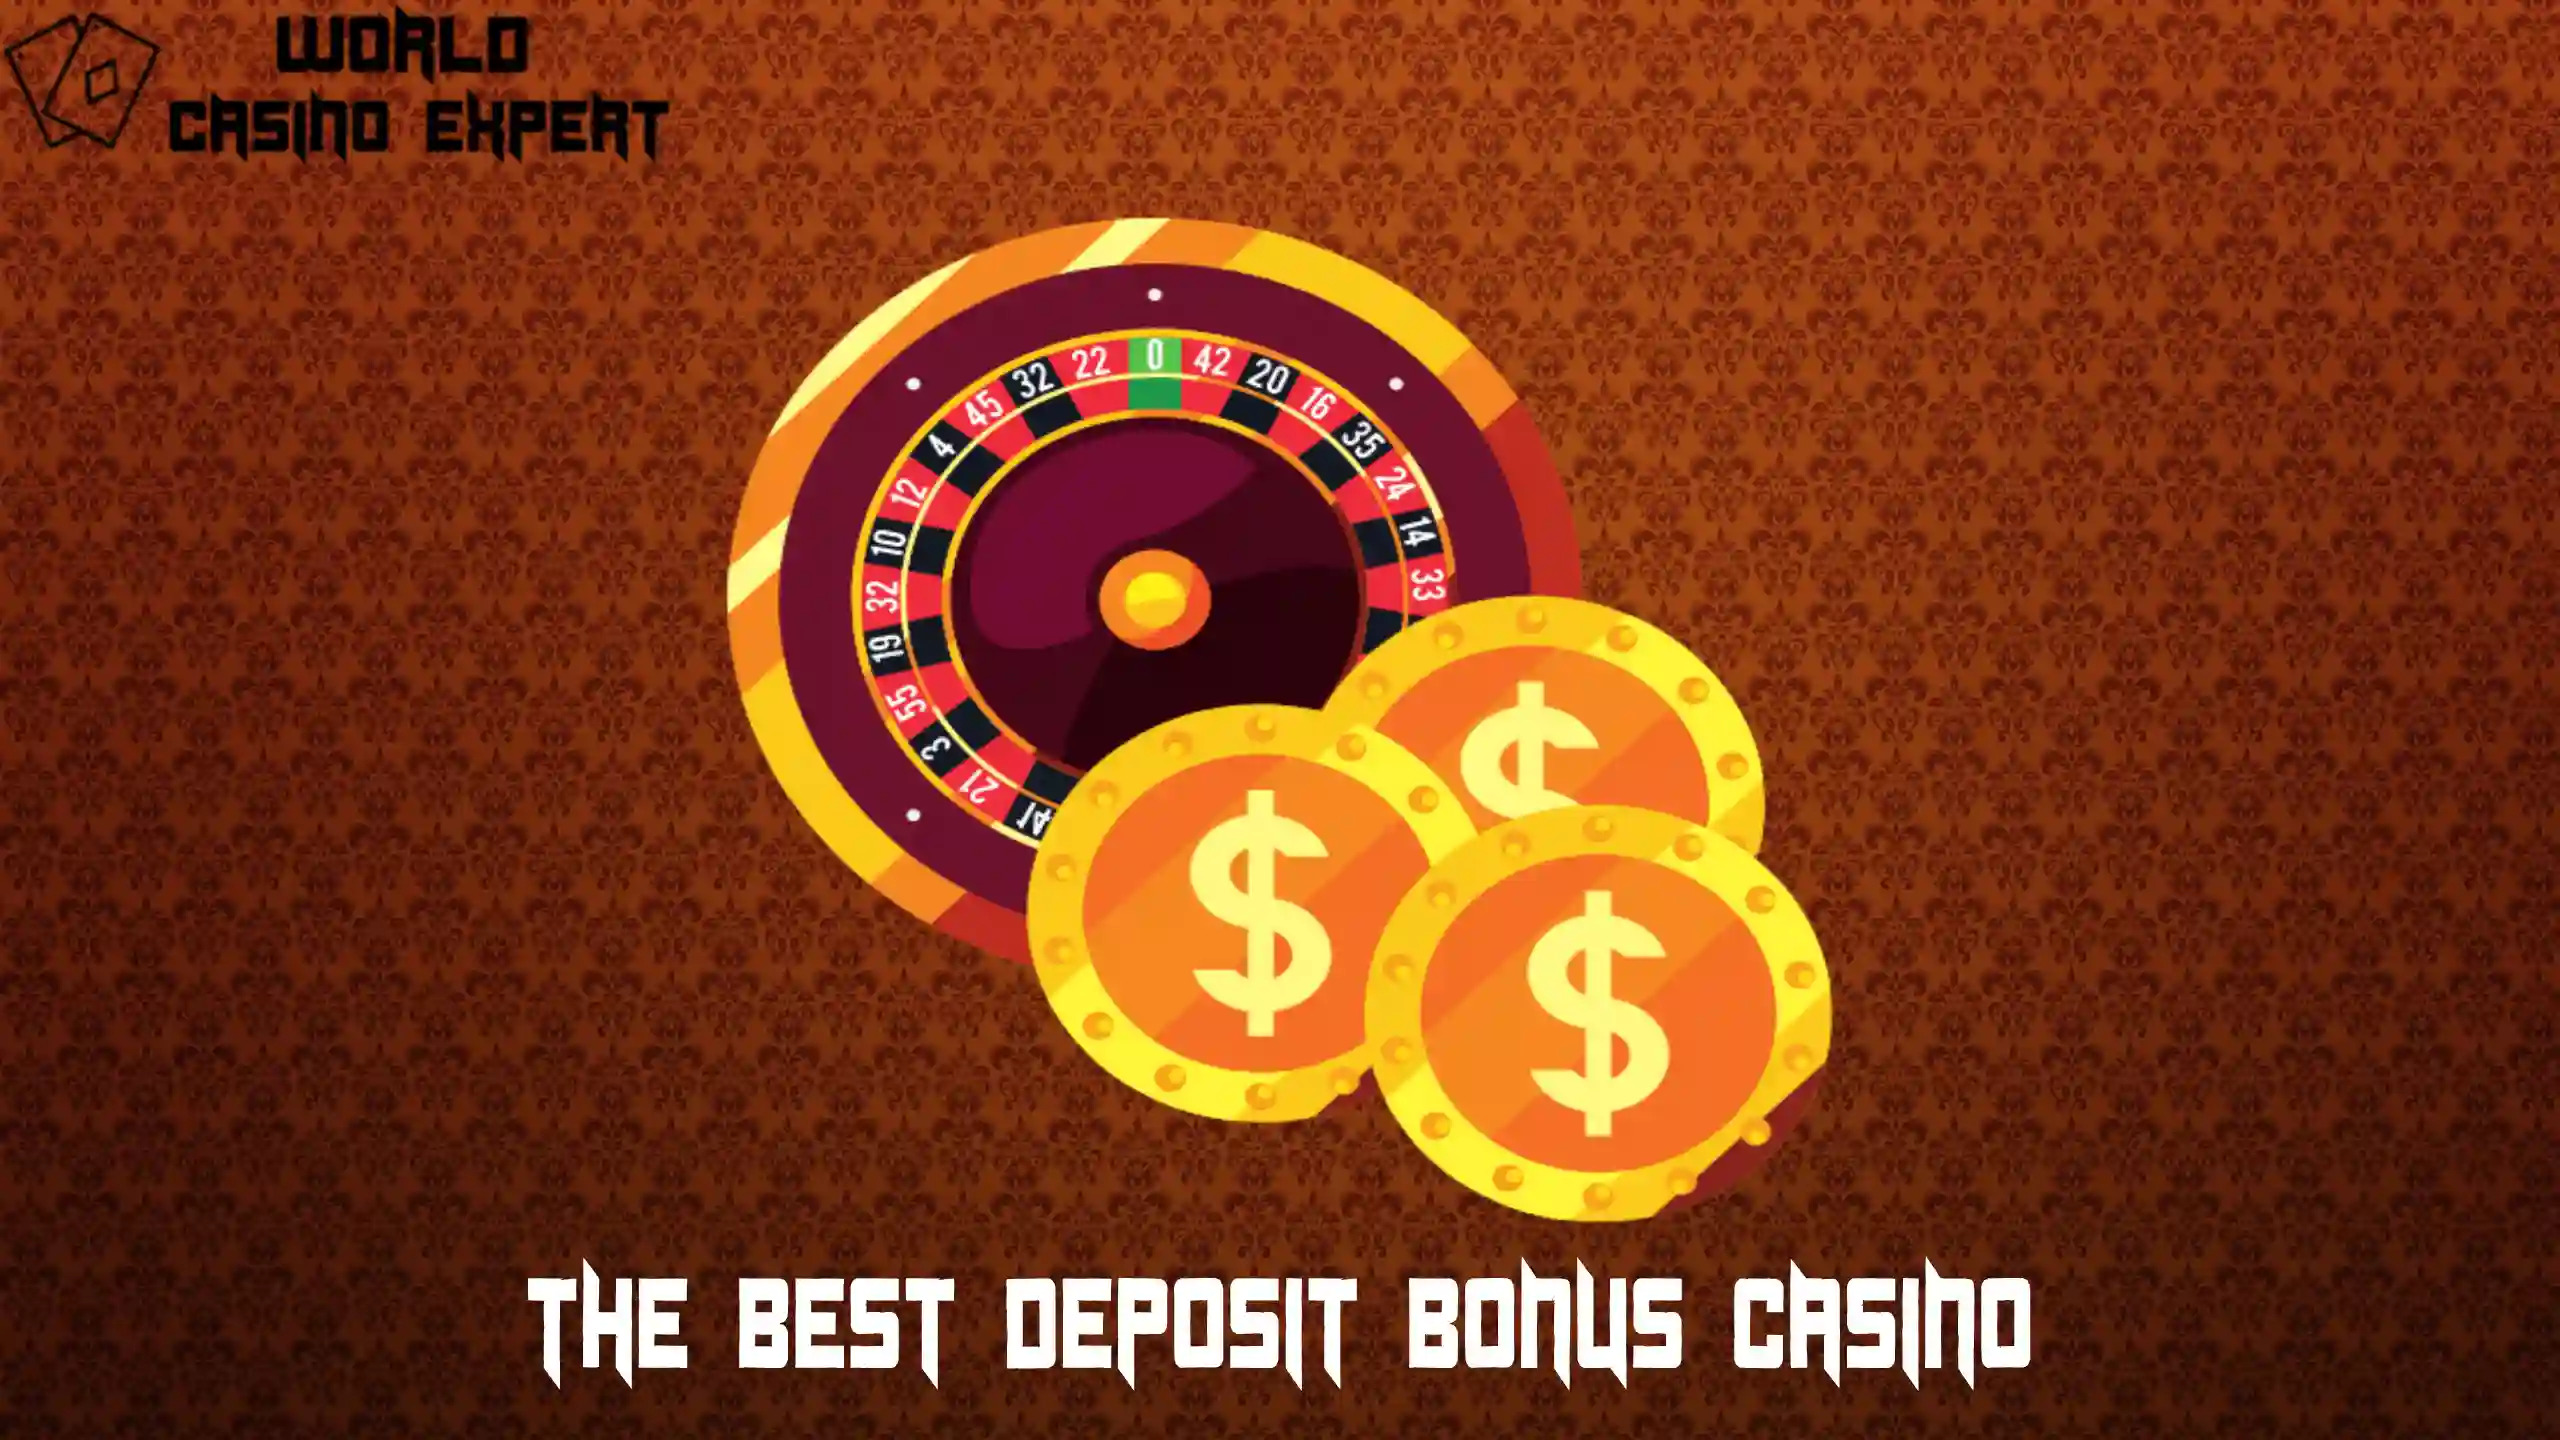 The Best Deposit Bonus Casino | World Casino Expert